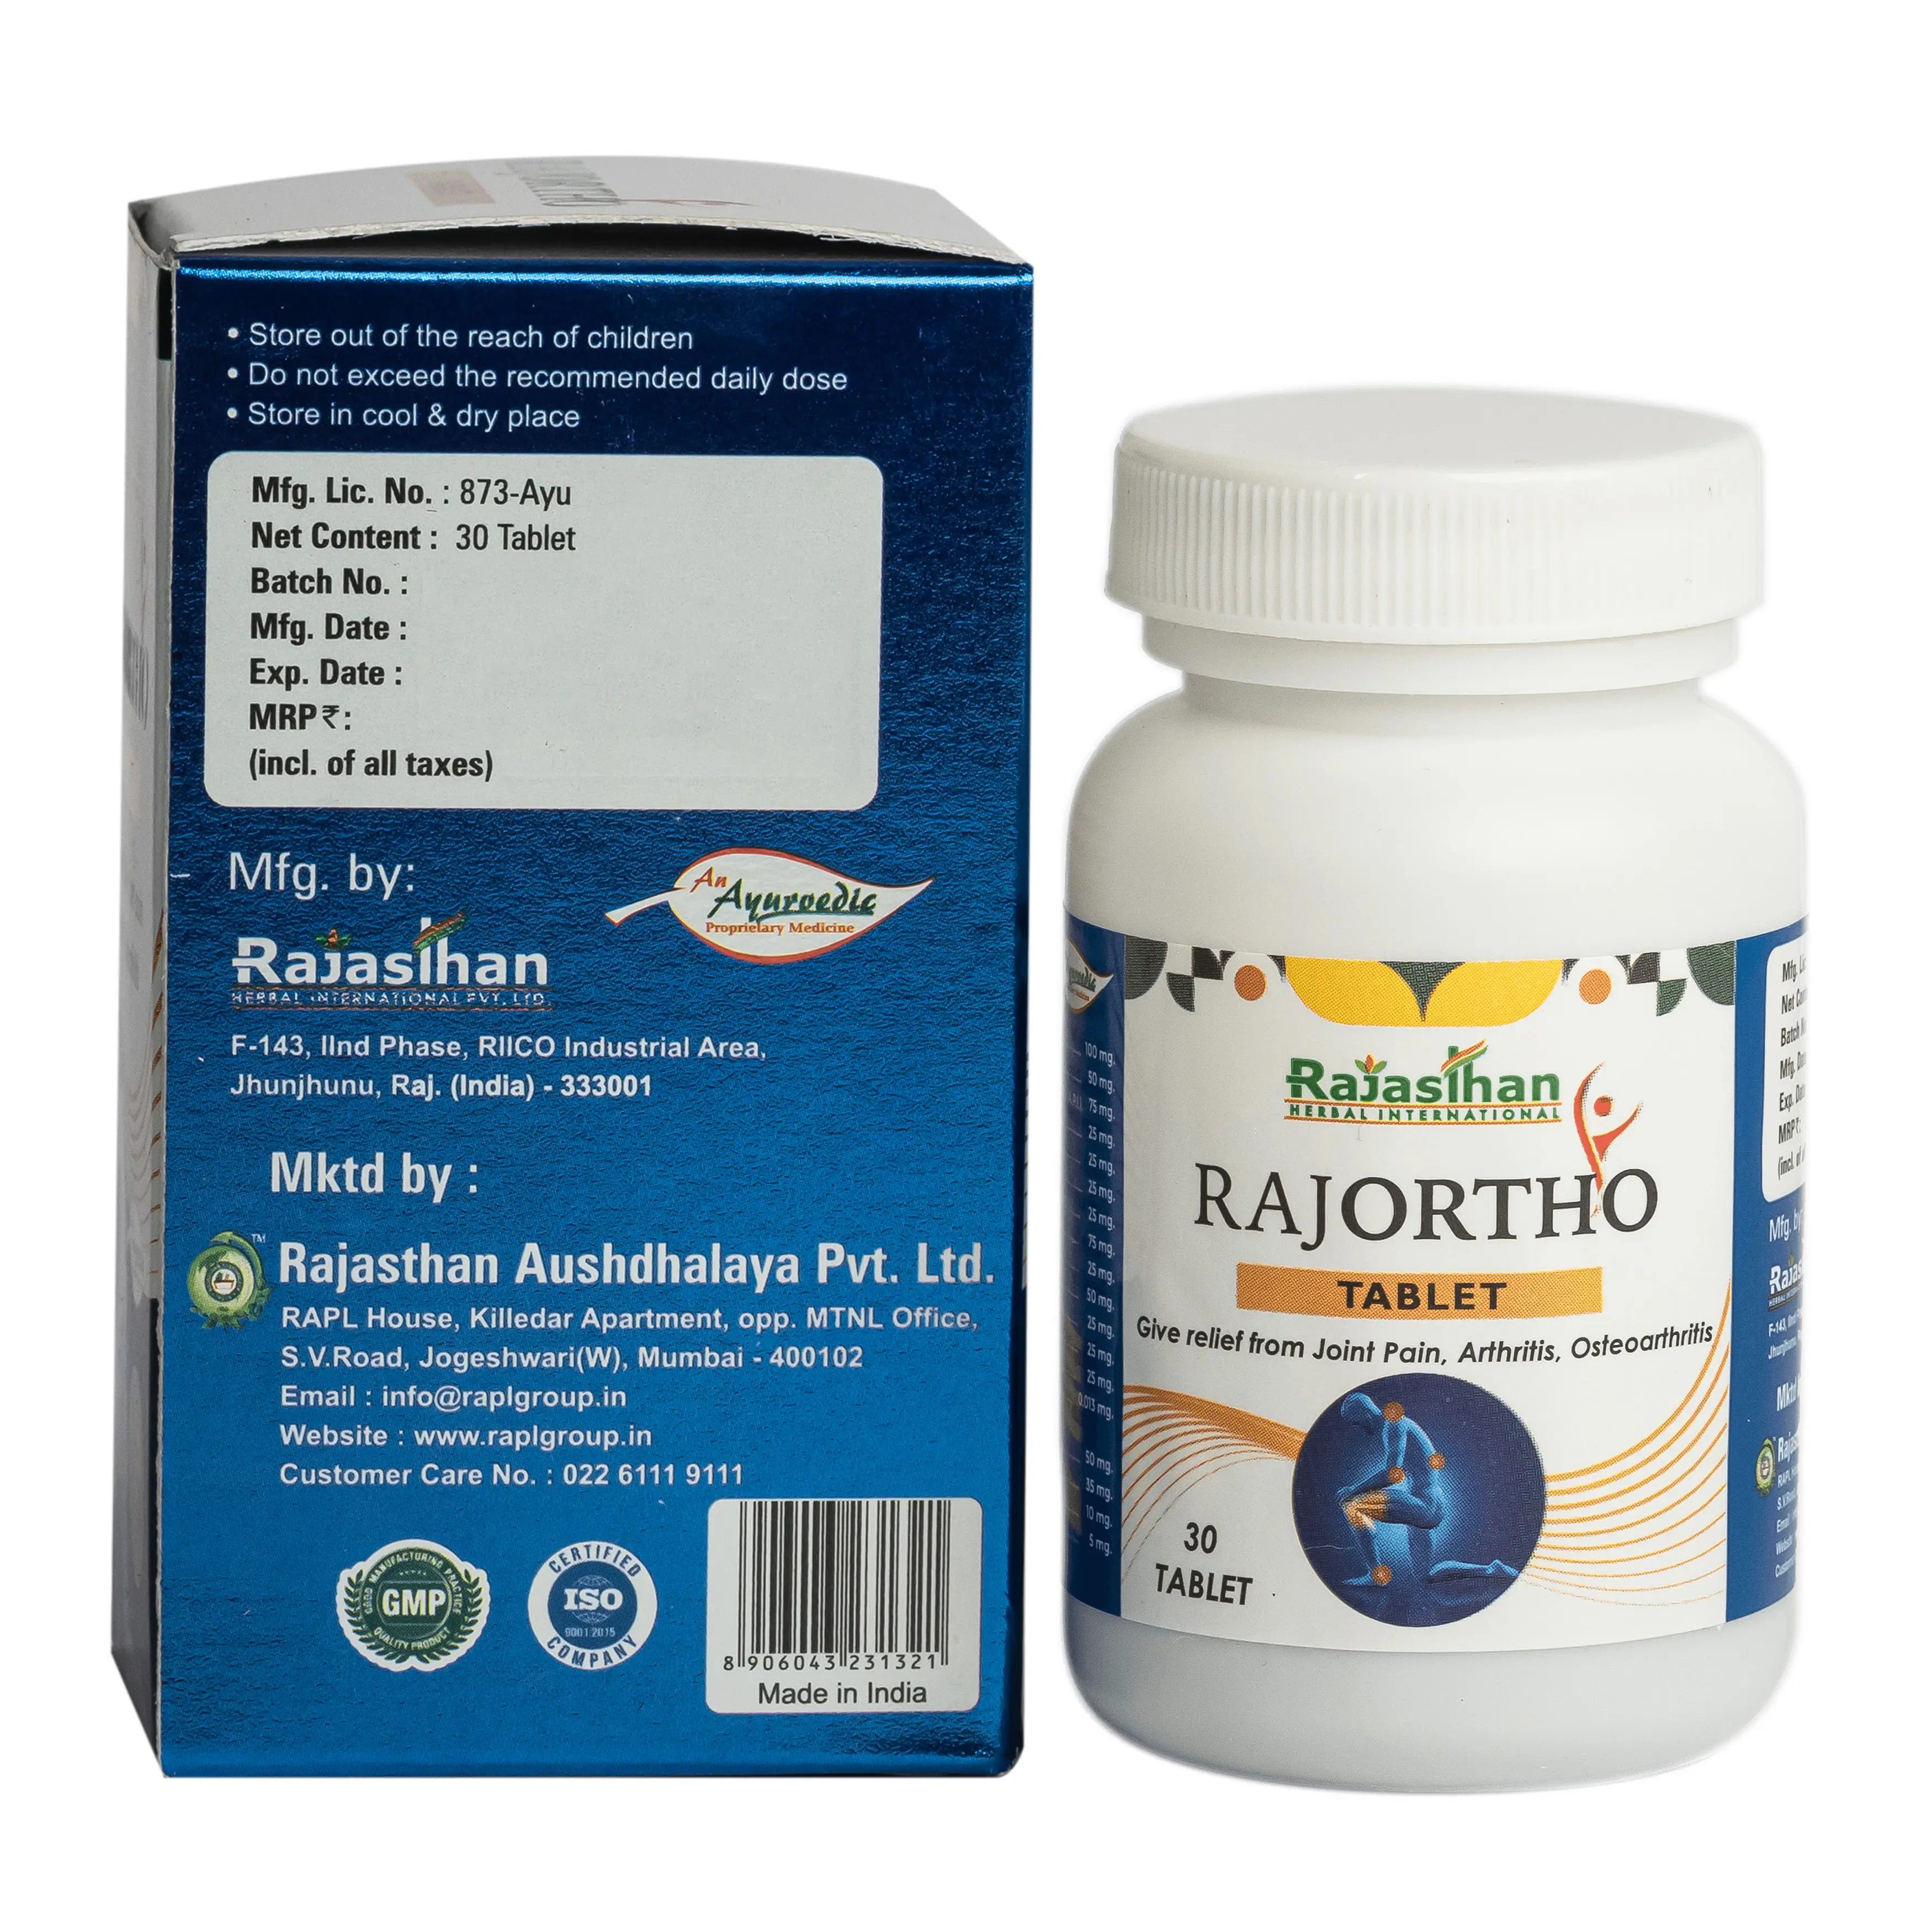 Rajortho Tablet 30 Arthritis Rajasthan Aushdhalaya